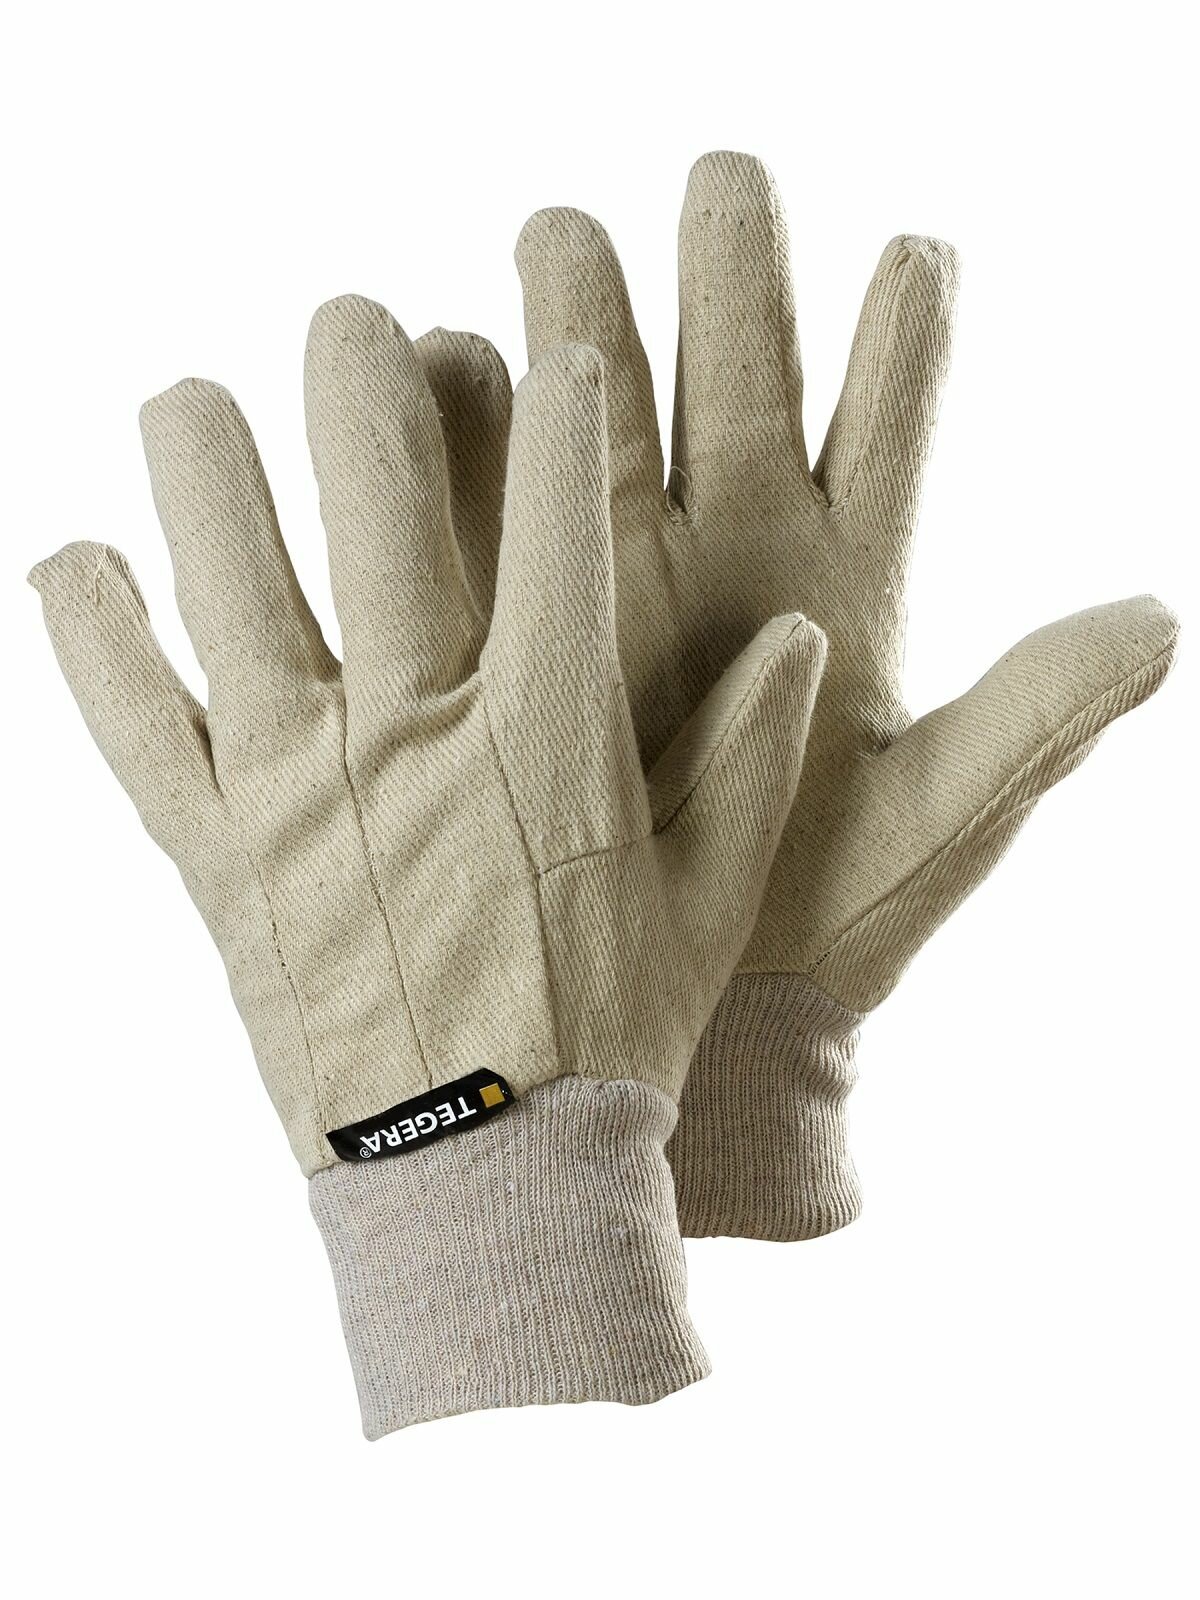 Перчатки TEGERA 9250 текстильные перчатки хлопок без подкладки размер 10